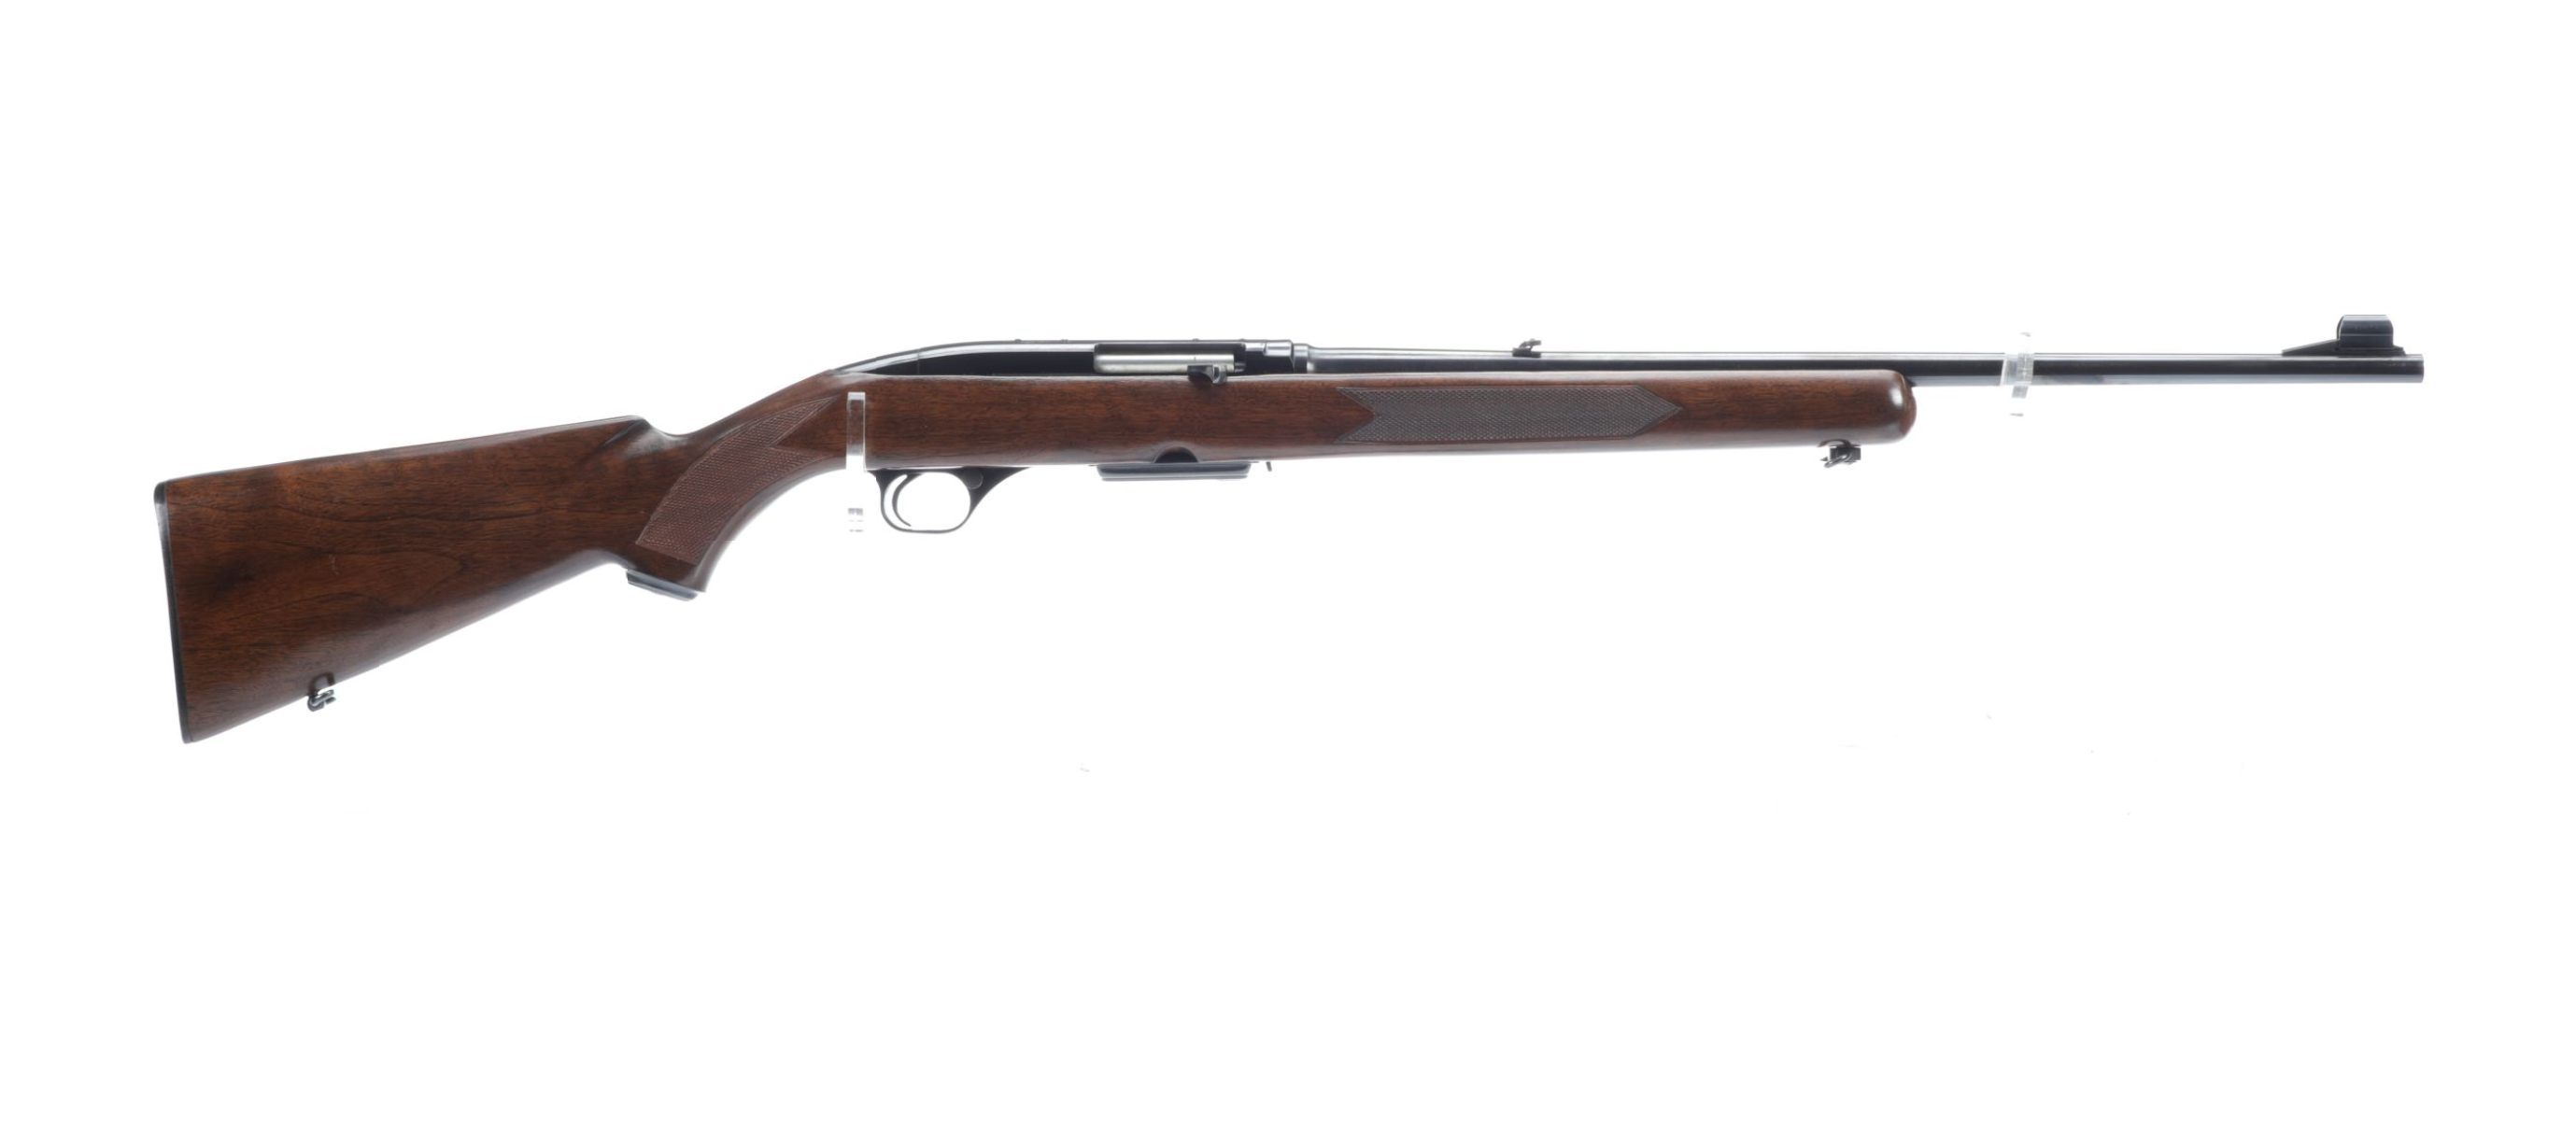 A Winchester Model 100 semi-automatic rifle. 